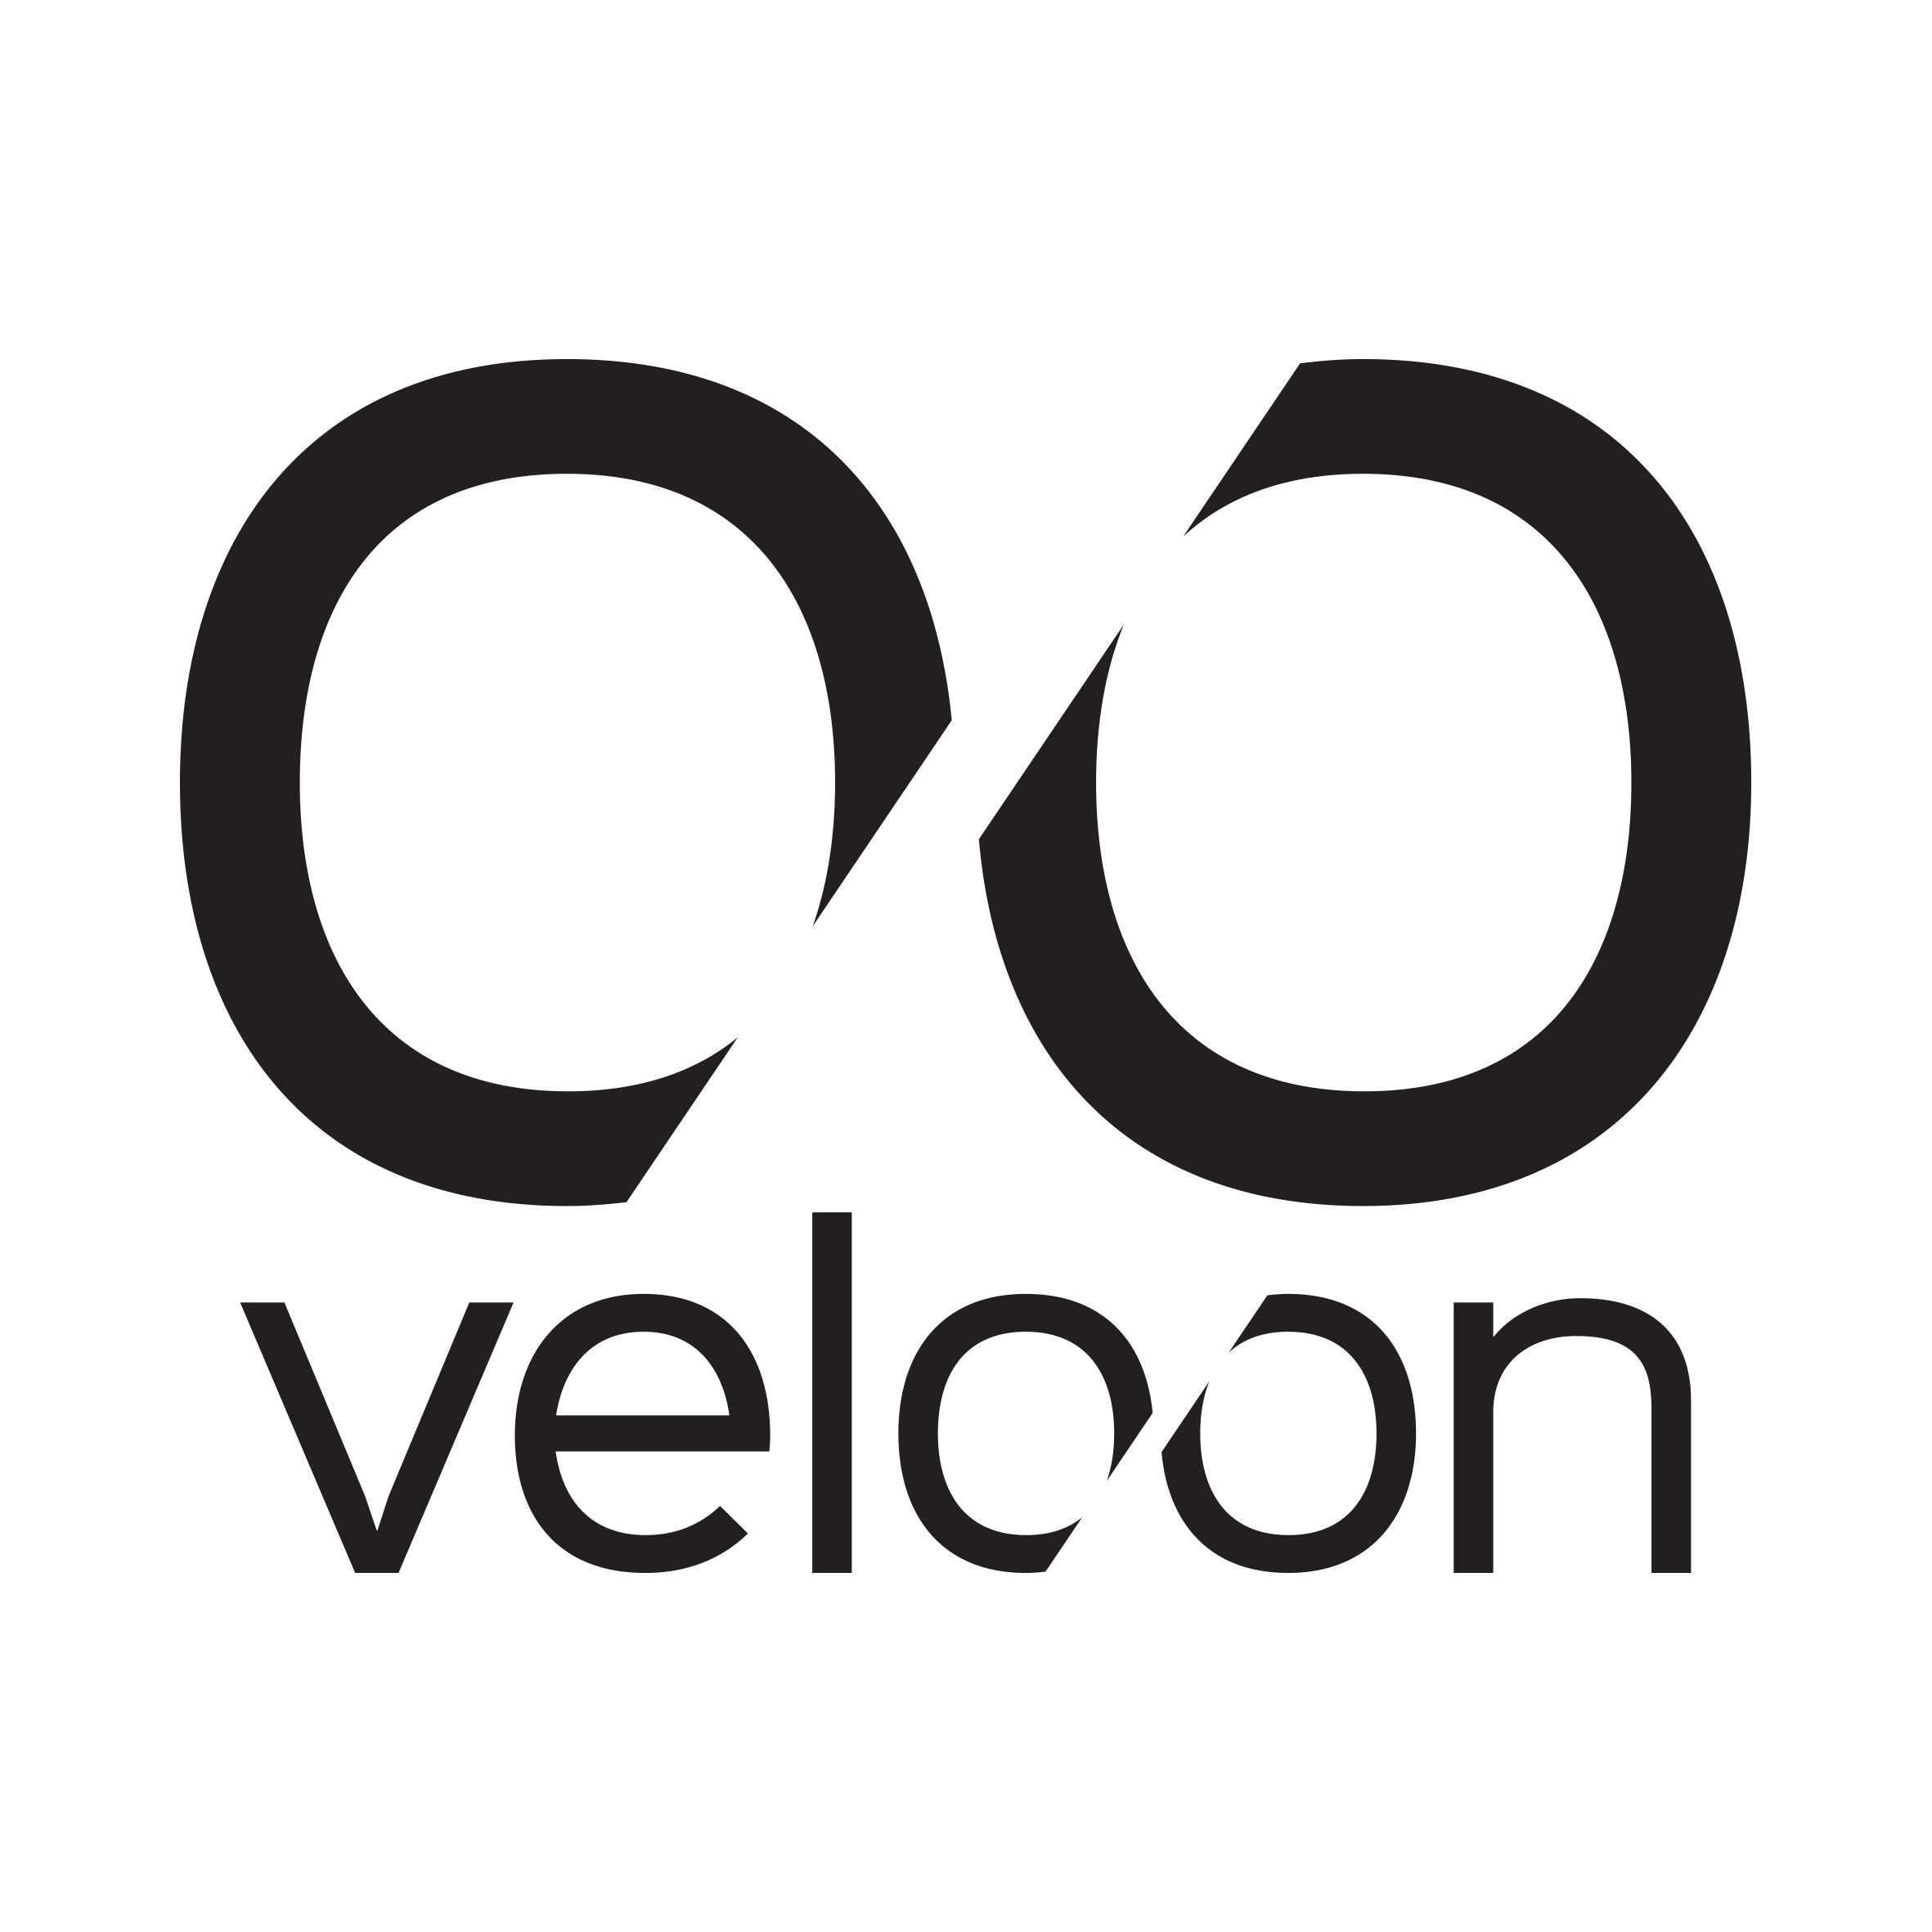 Veloon